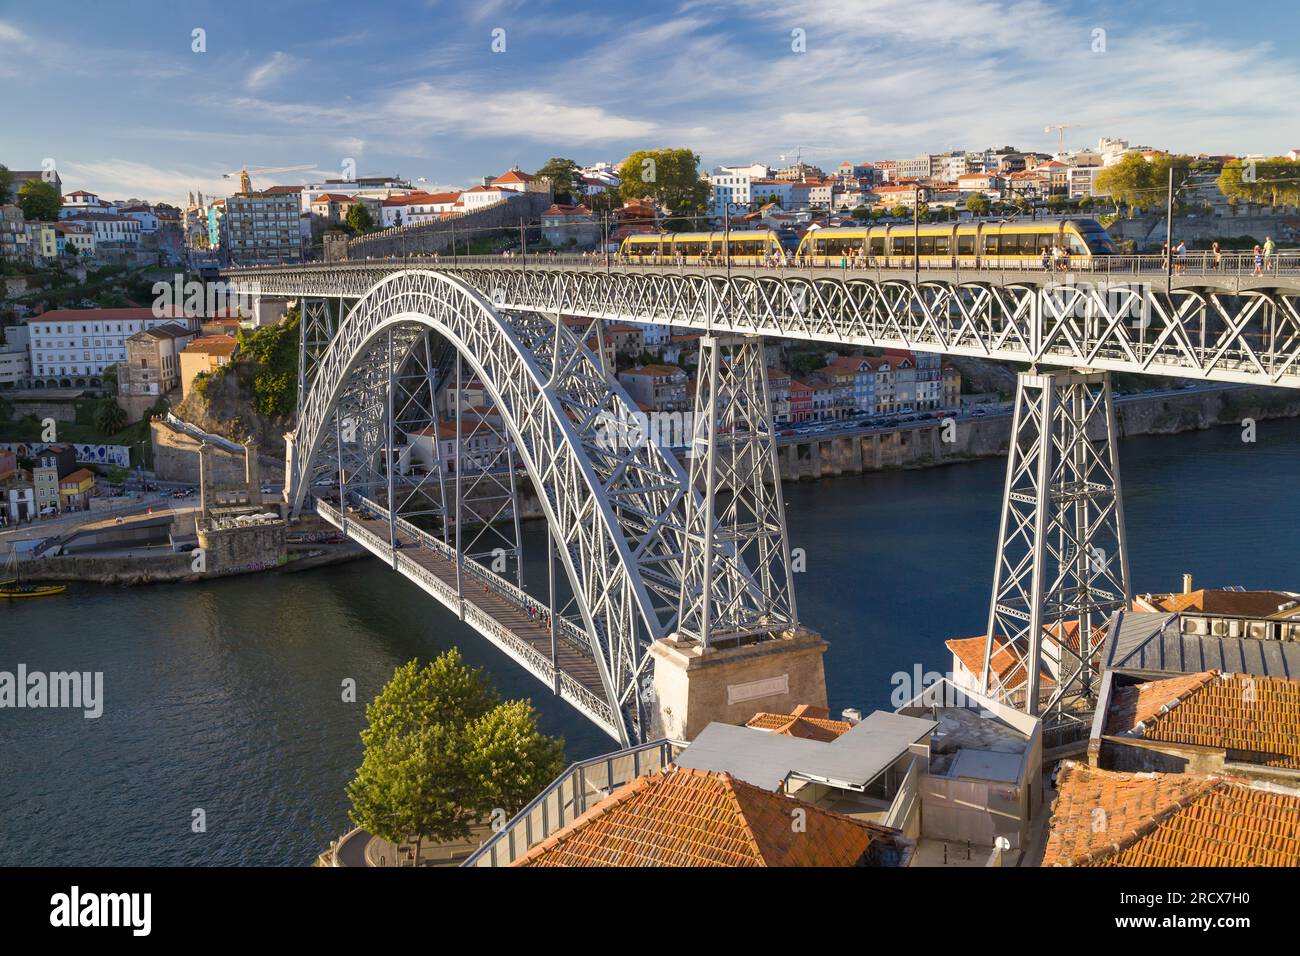 Vila Nova de Gaia, Portugal - 25. August 2020: Luis I-Brücke von Vila Nova de Gaia, Portugal, in der Abenddämmerung. Stockfoto